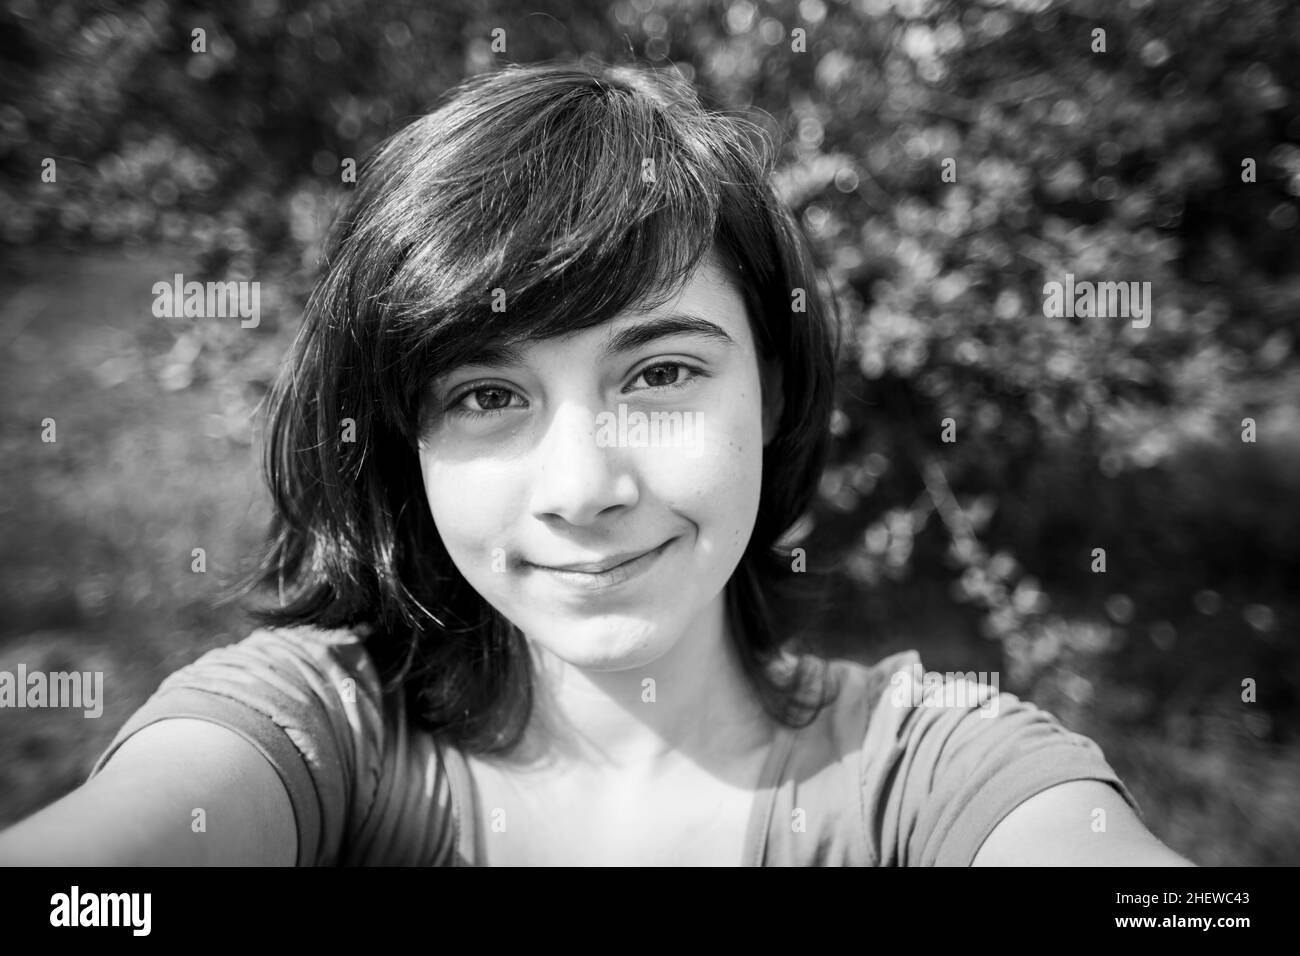 Ein Mädchen macht ein Selfie im Park. Schwarzweiß-Foto. Stockfoto